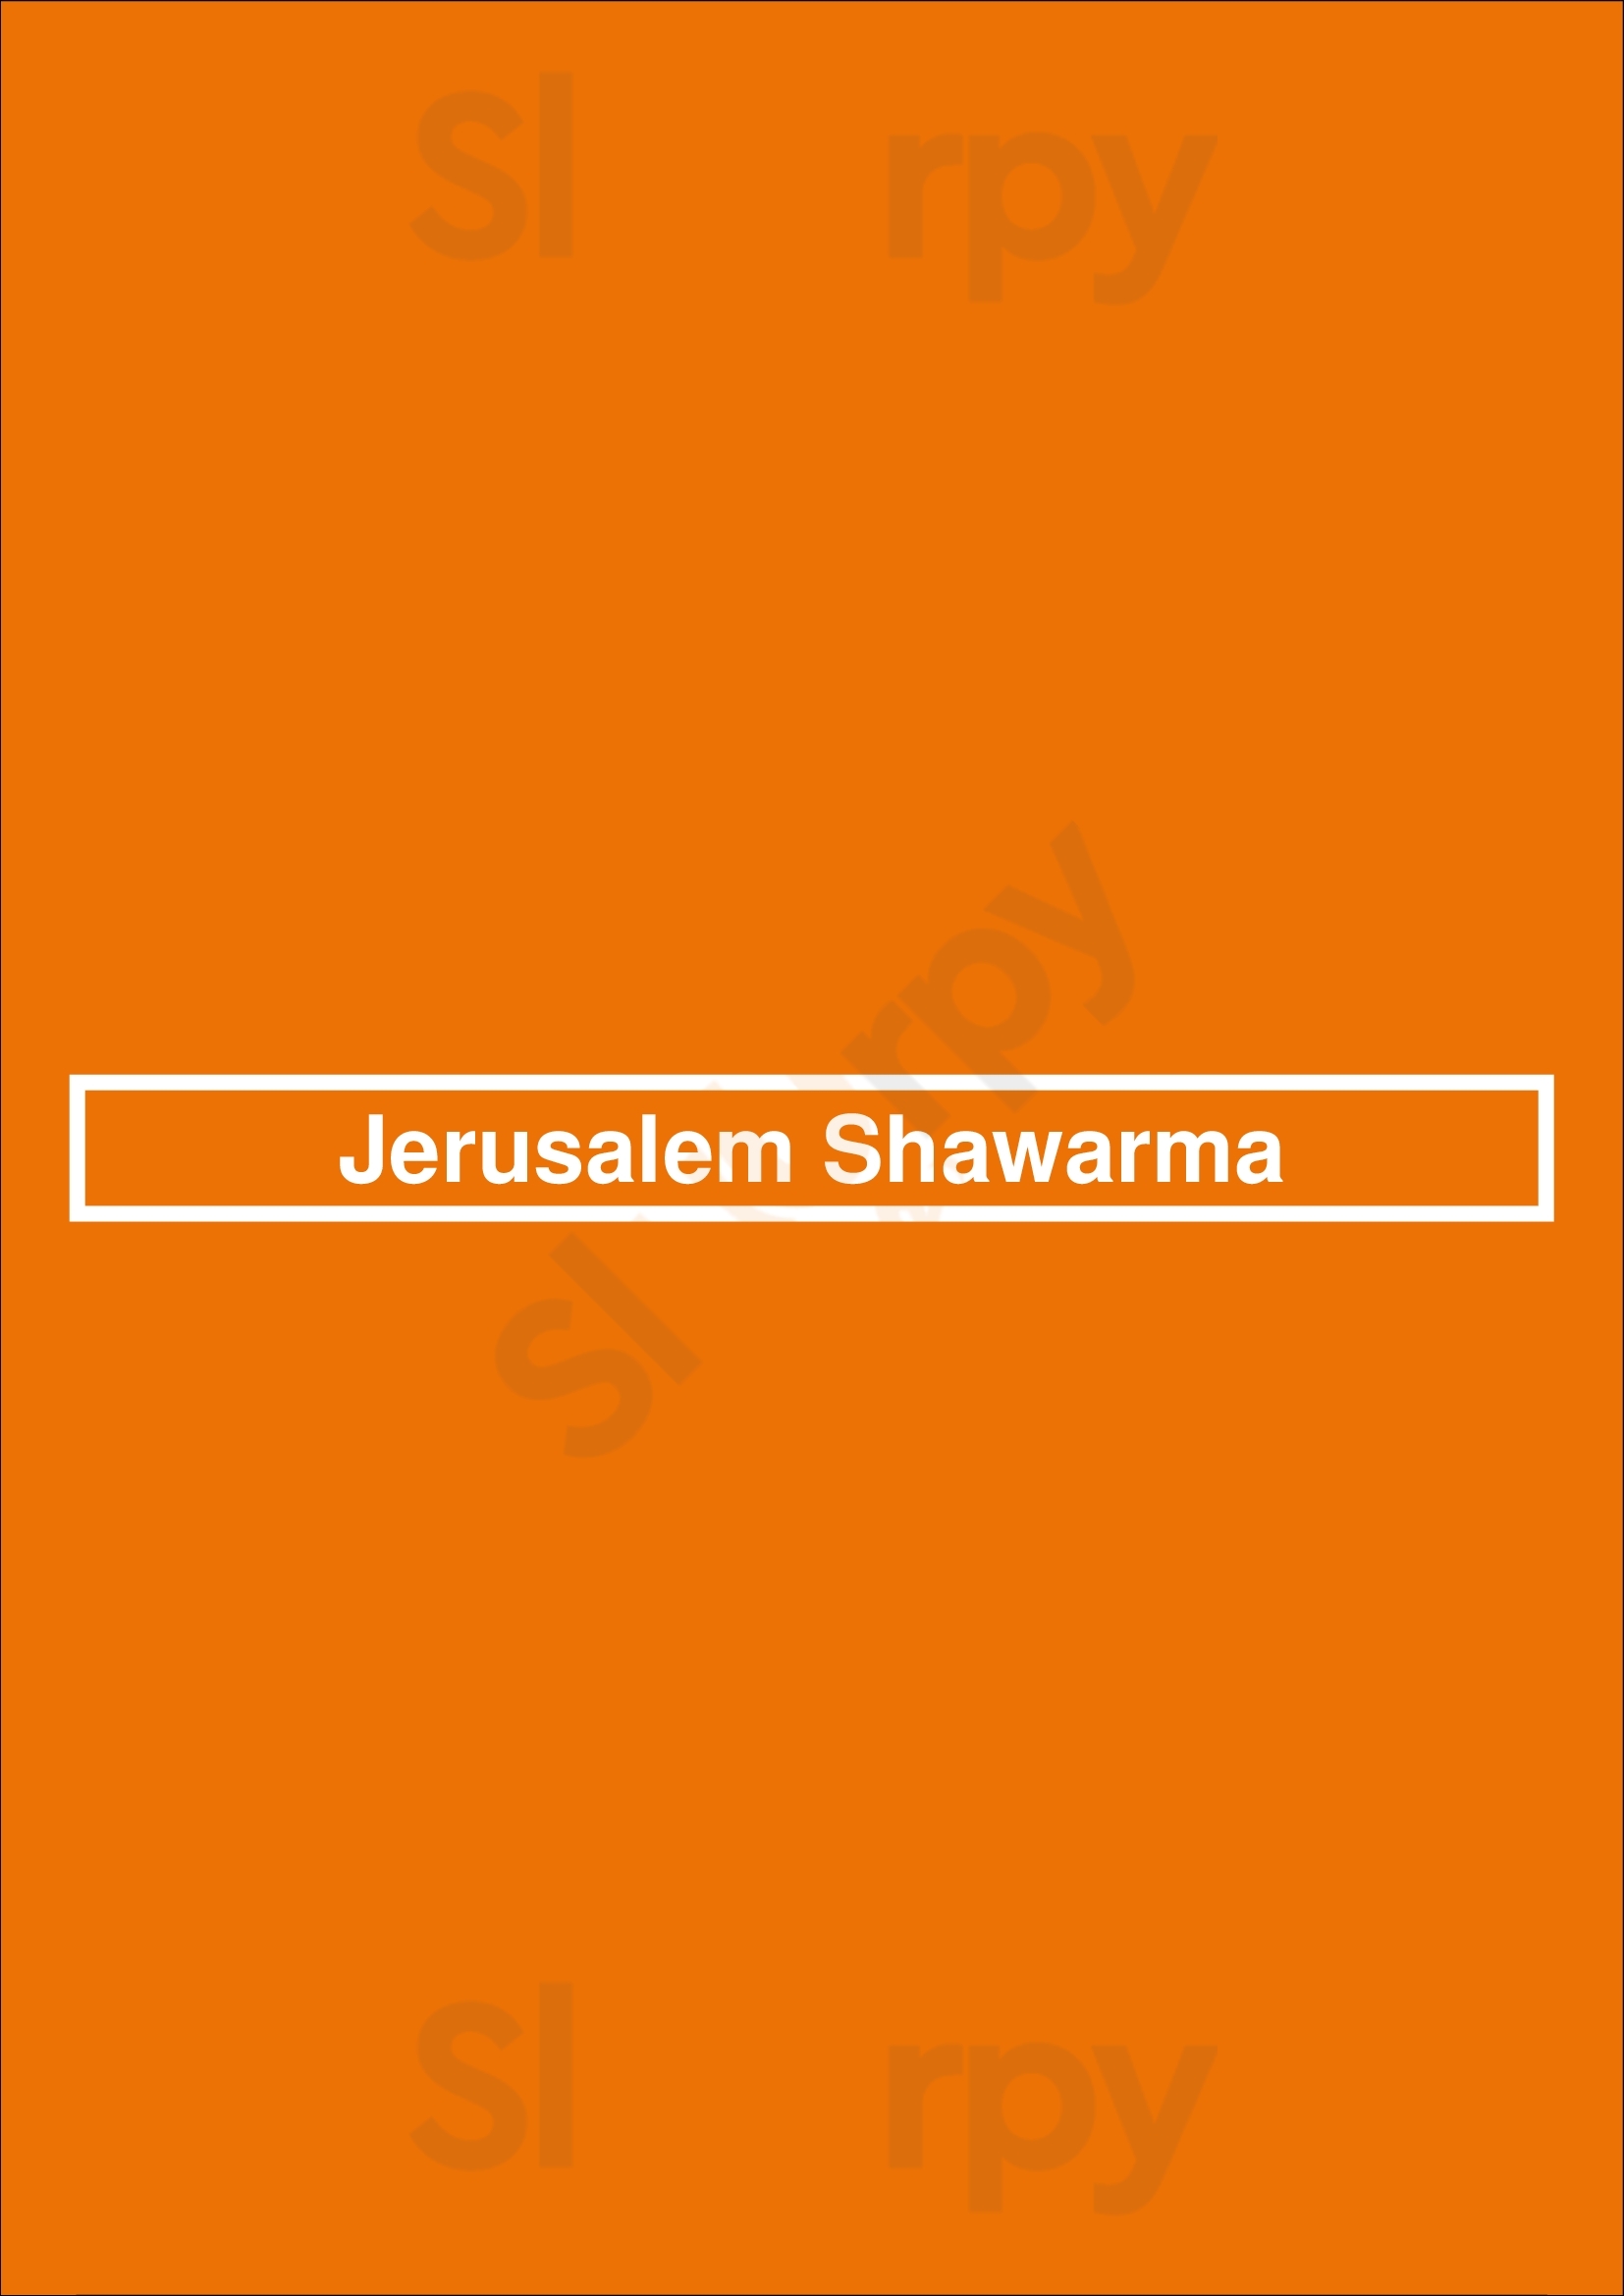 Jerusalem Shawarma Calgary Menu - 1